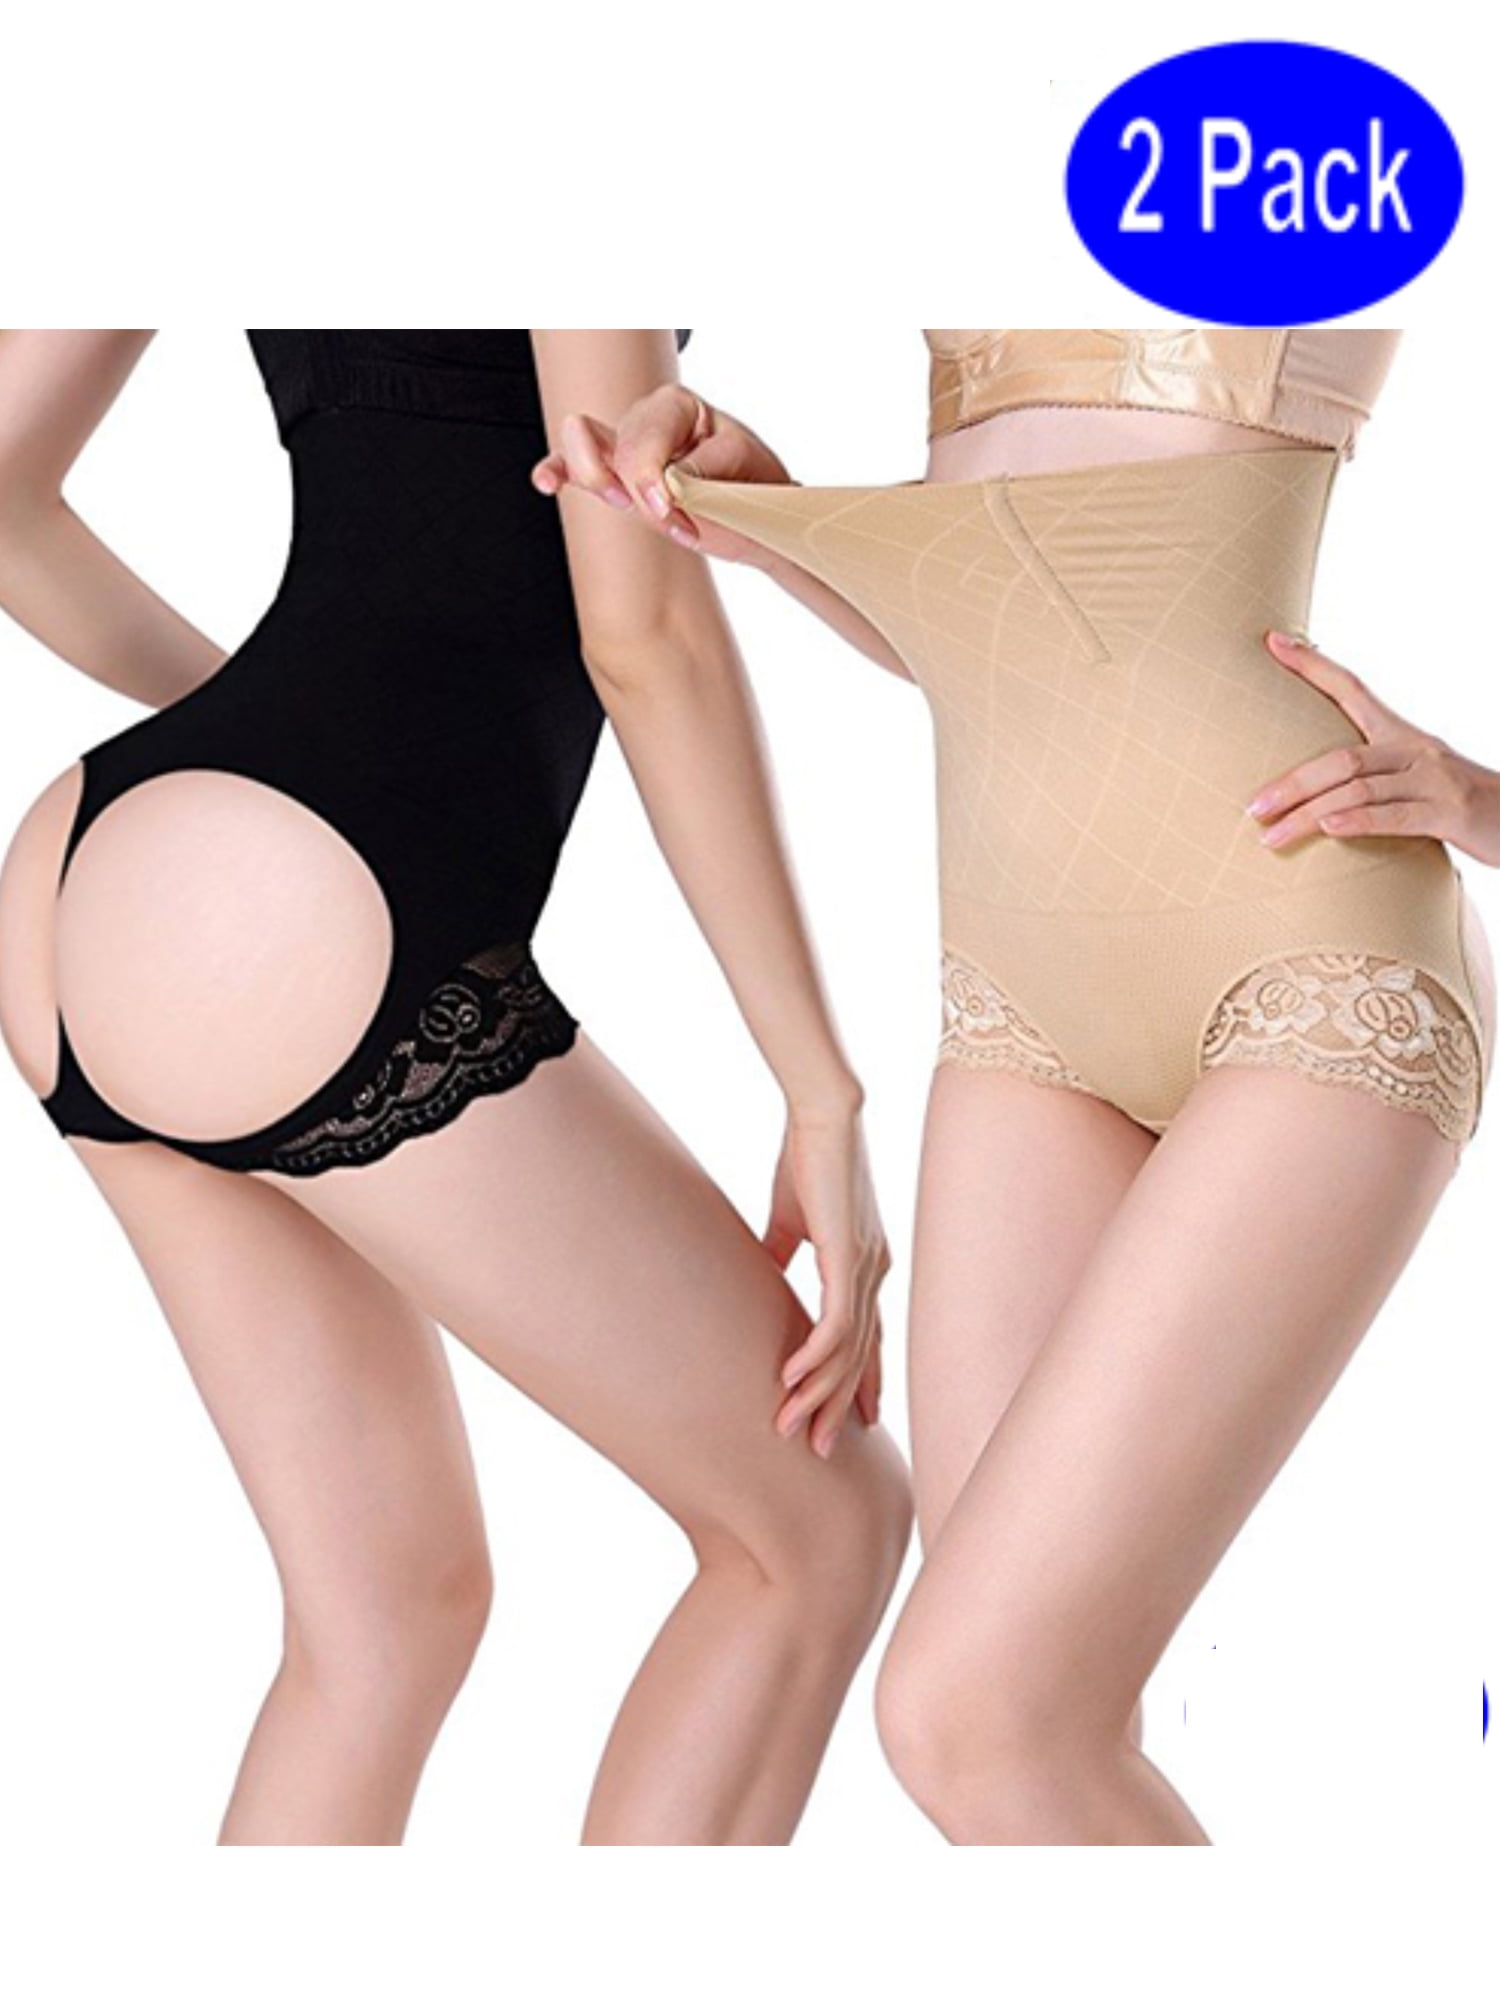 LELINTA Women's Tummy Control Shapewear Panties for Women High